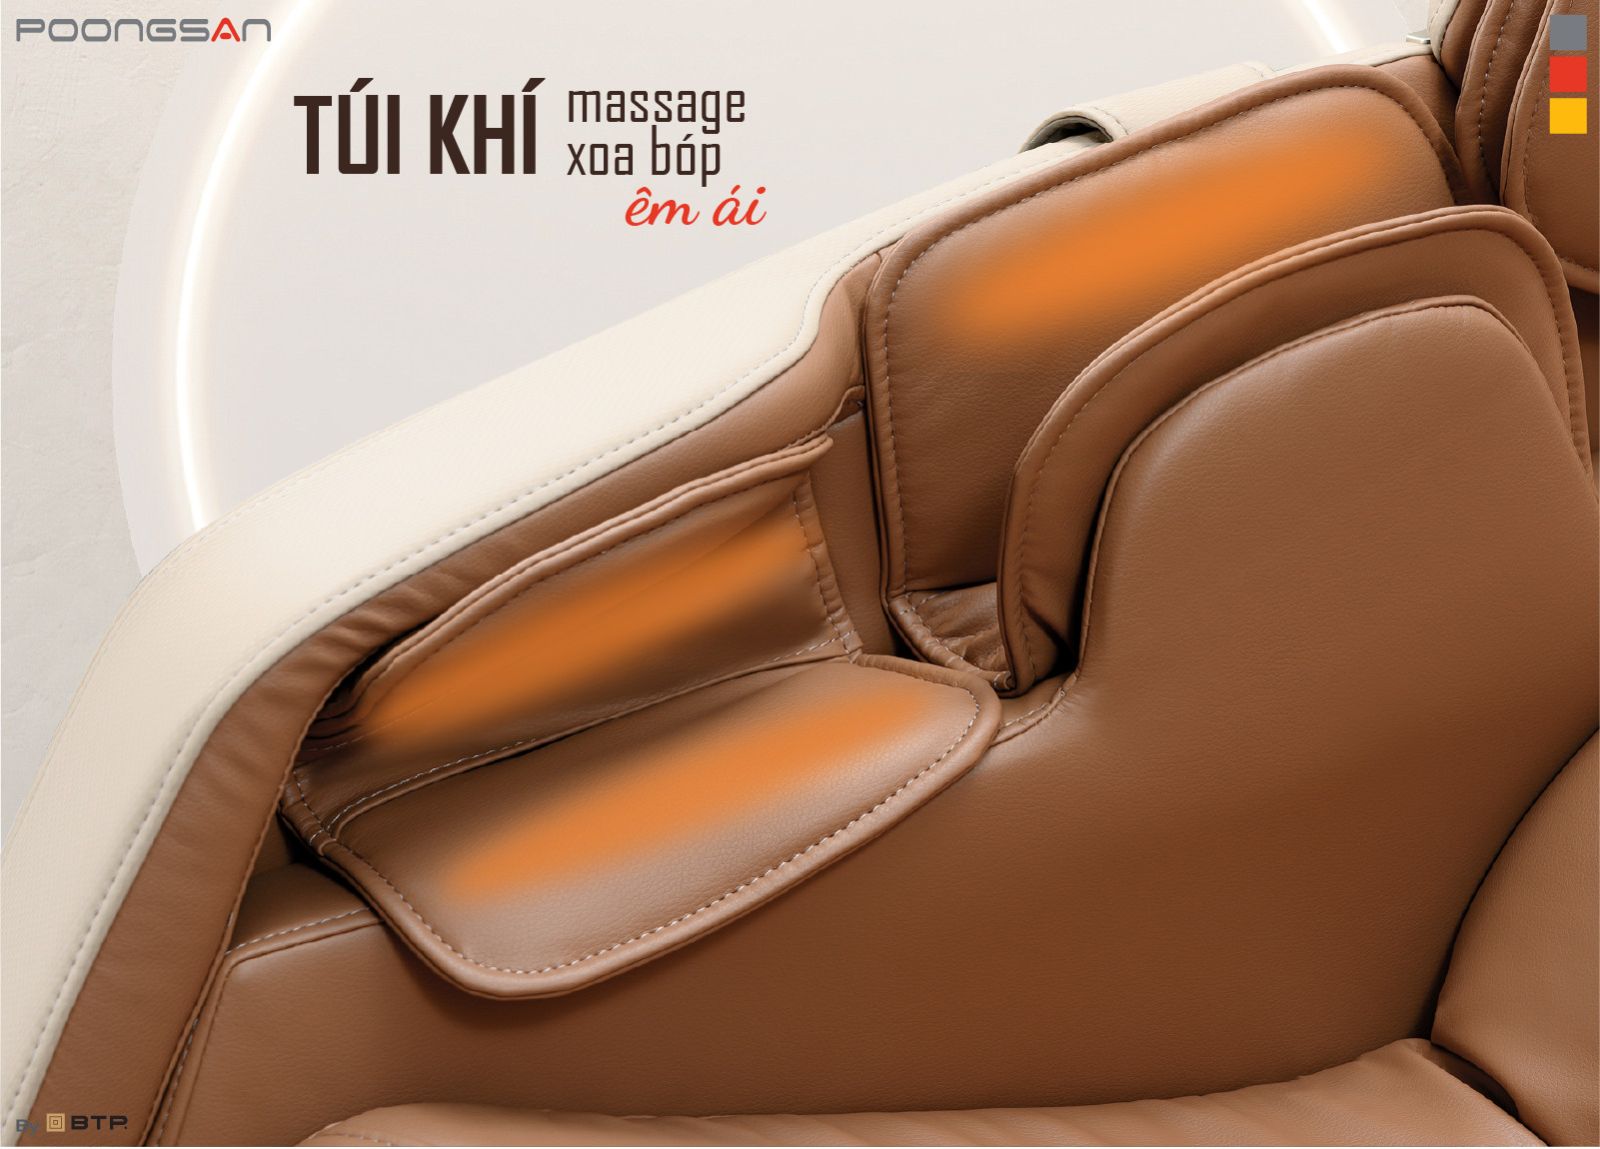 Túi khí massage xoa bóp êm ái của Poongsan MCP-300